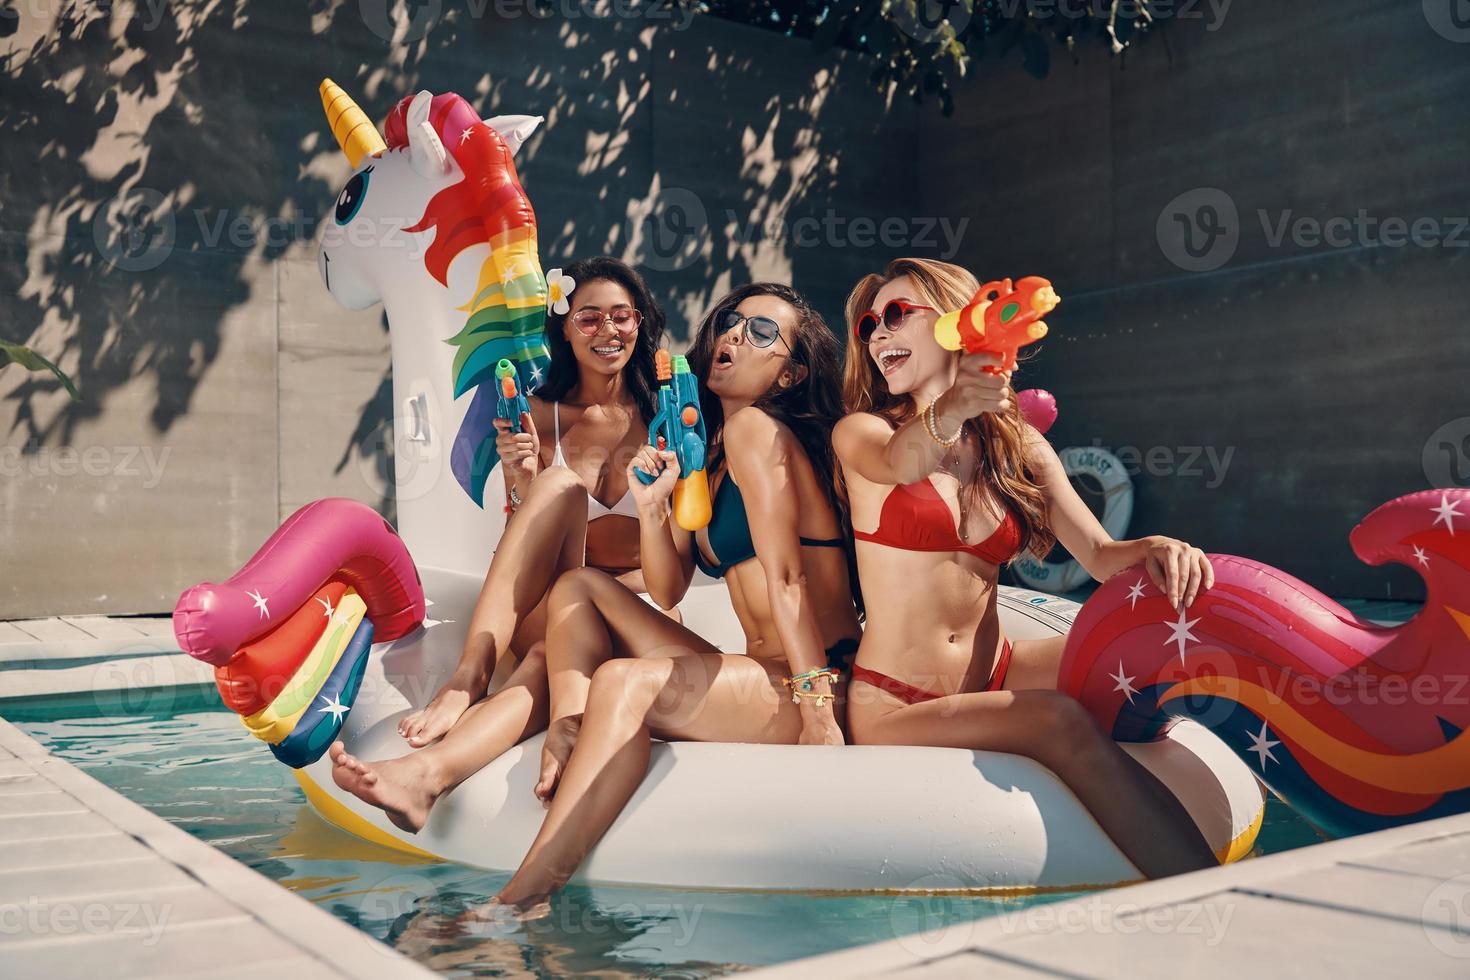 mulheres jovens atraentes em trajes de banho sorrindo e se divertindo com pistolas de água enquanto flutuava no unicórnio inflável na piscina ao ar livre foto